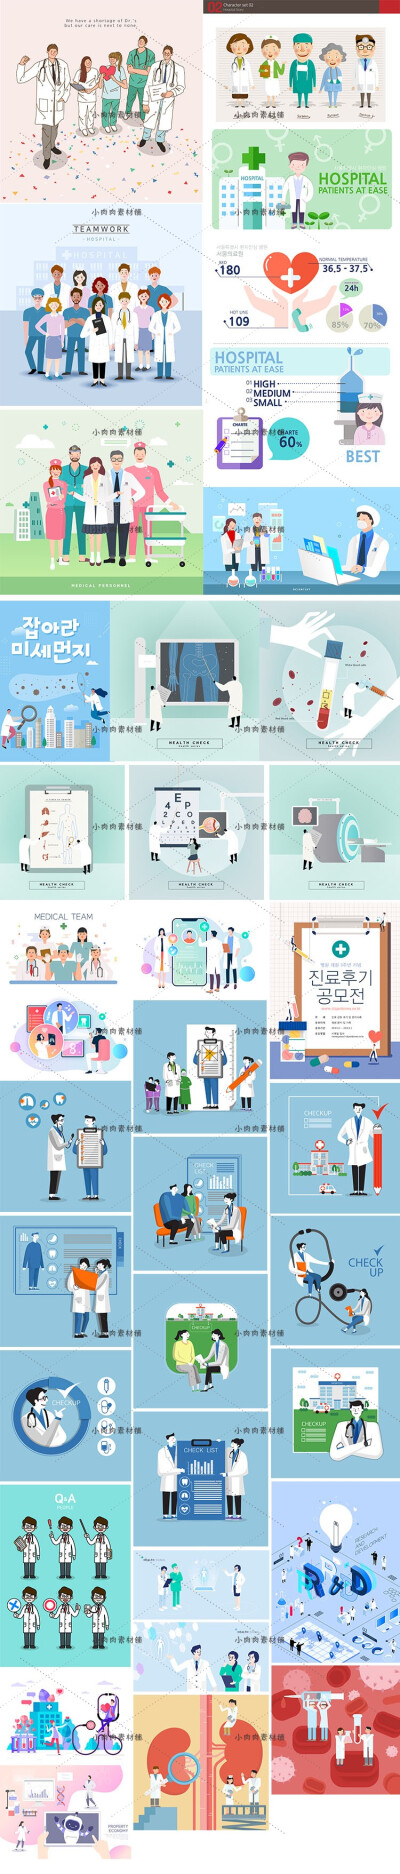 医疗医院健康卫生防疫防肺炎知识宣传插画AI矢量设计素材ai530